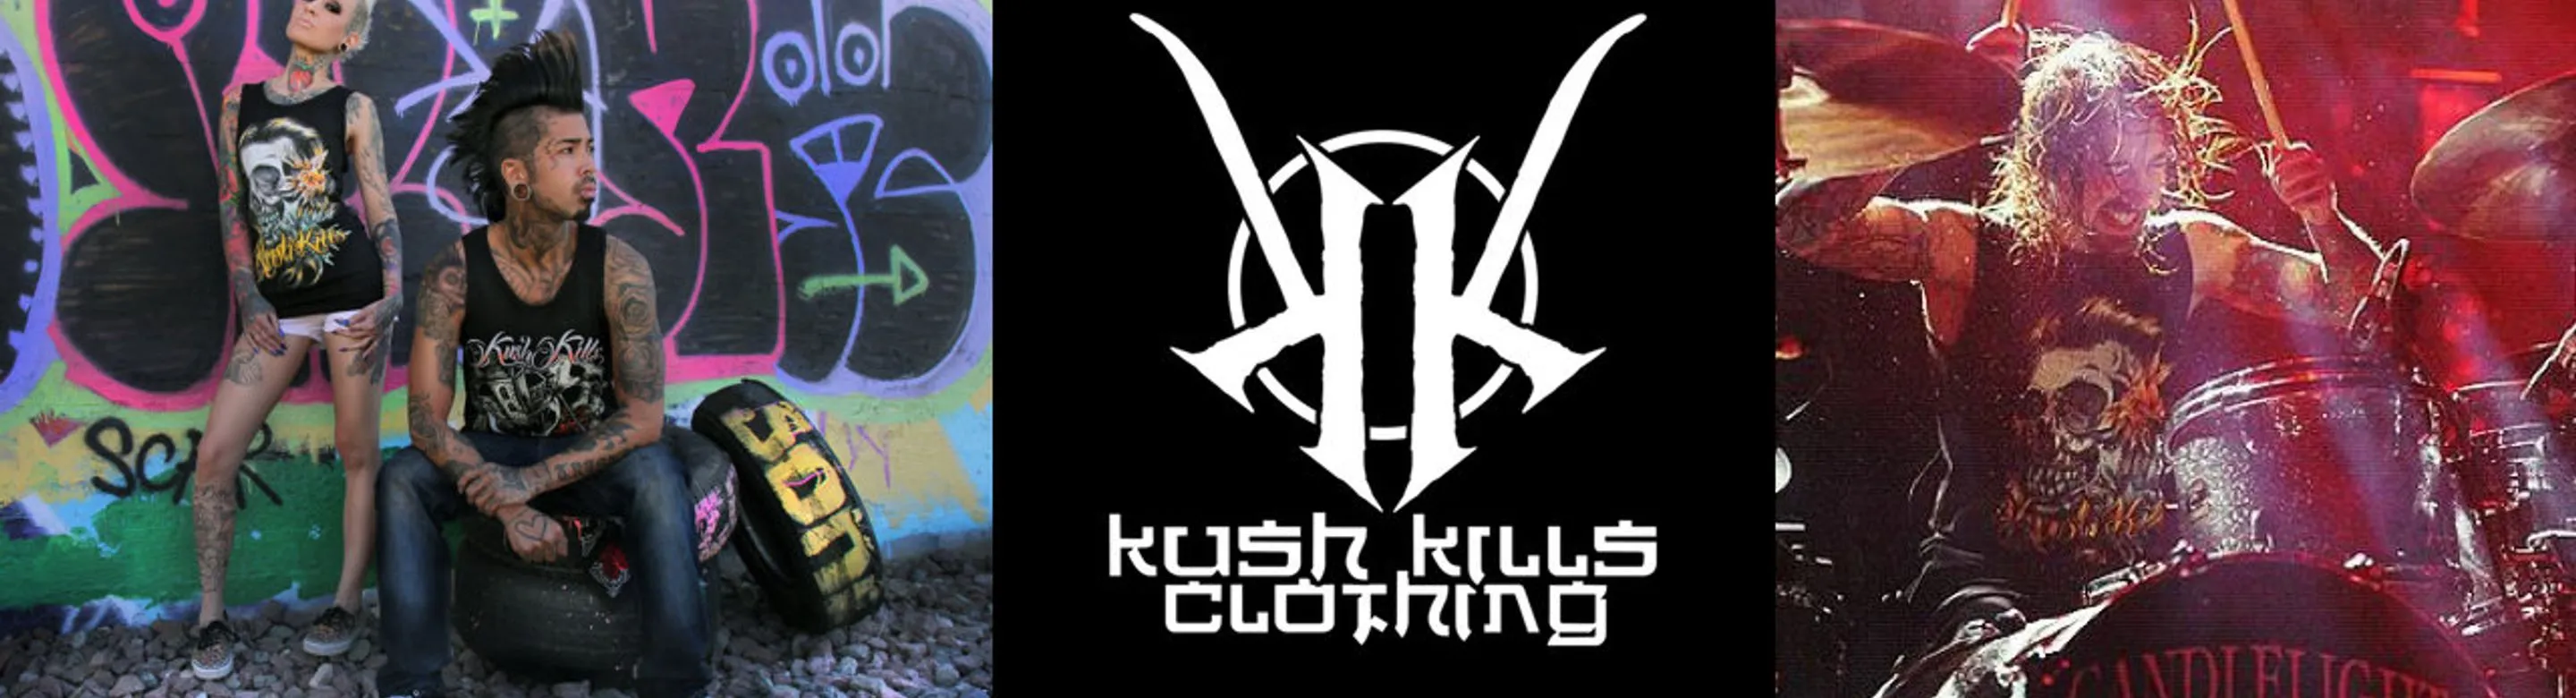 Kush Kills Clothing